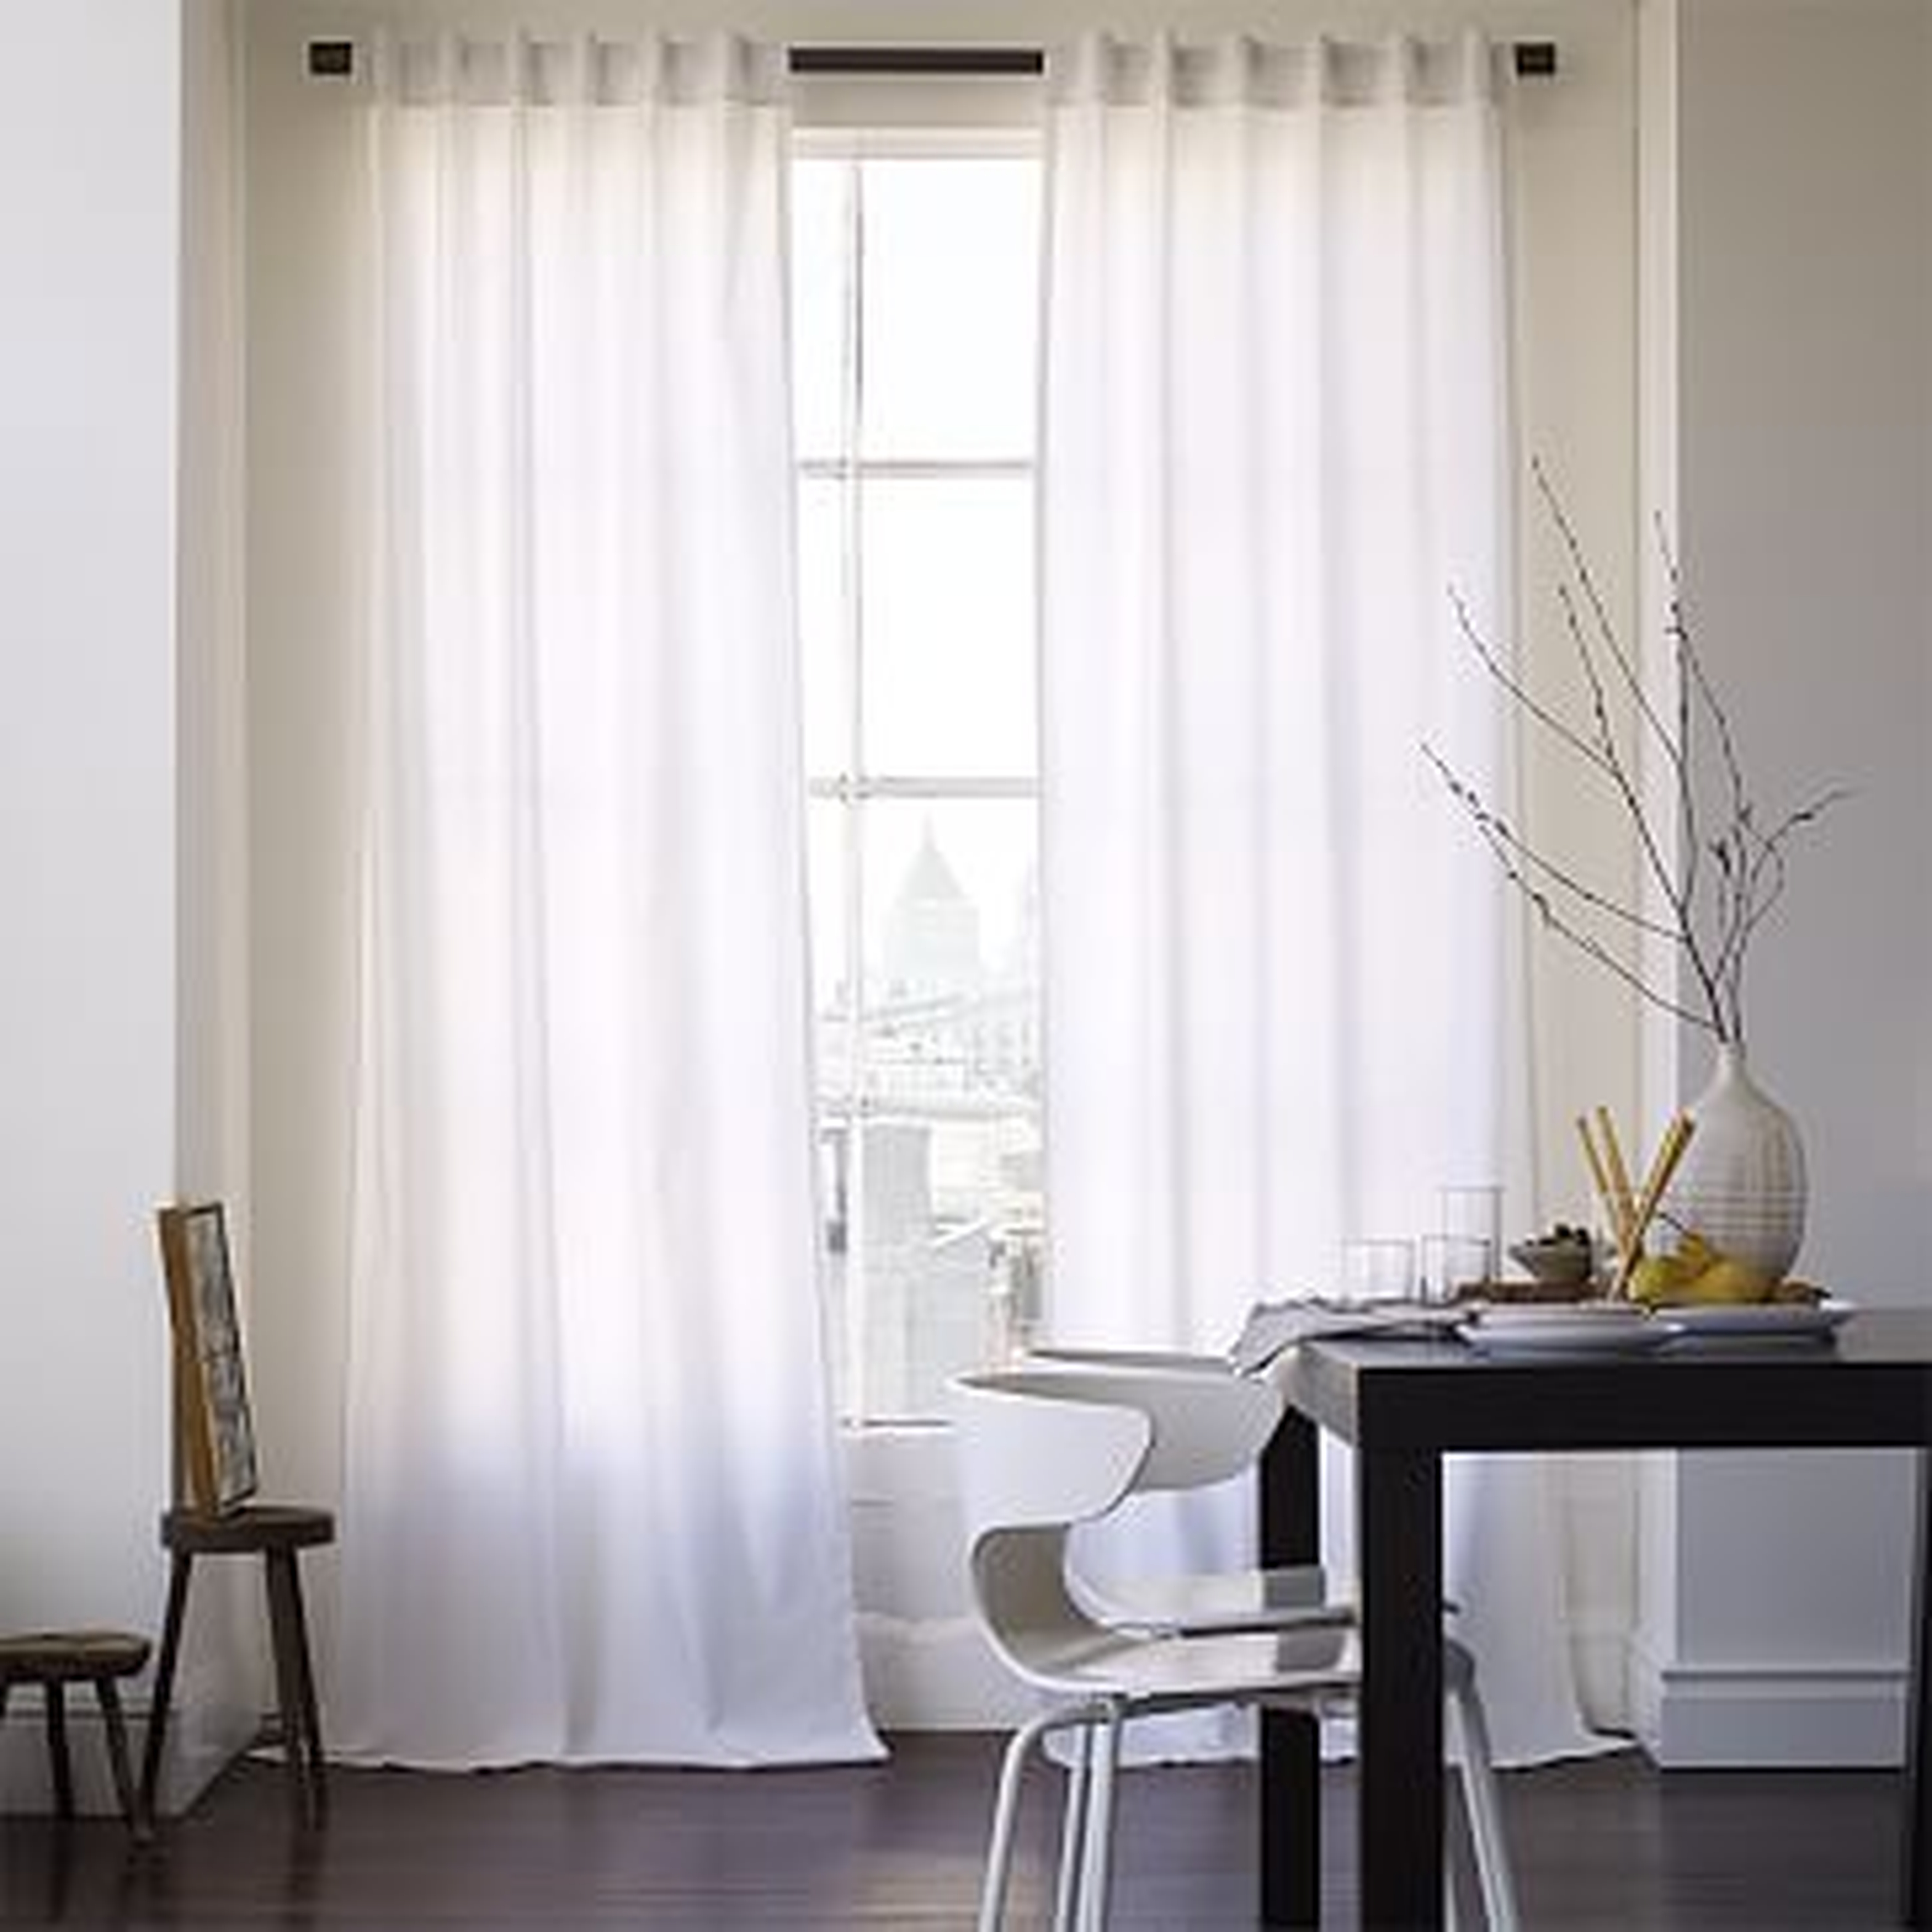 Cotton Canvas Pole Pocket Curtain, 48"x84", White, Set of 2 unlined - West Elm